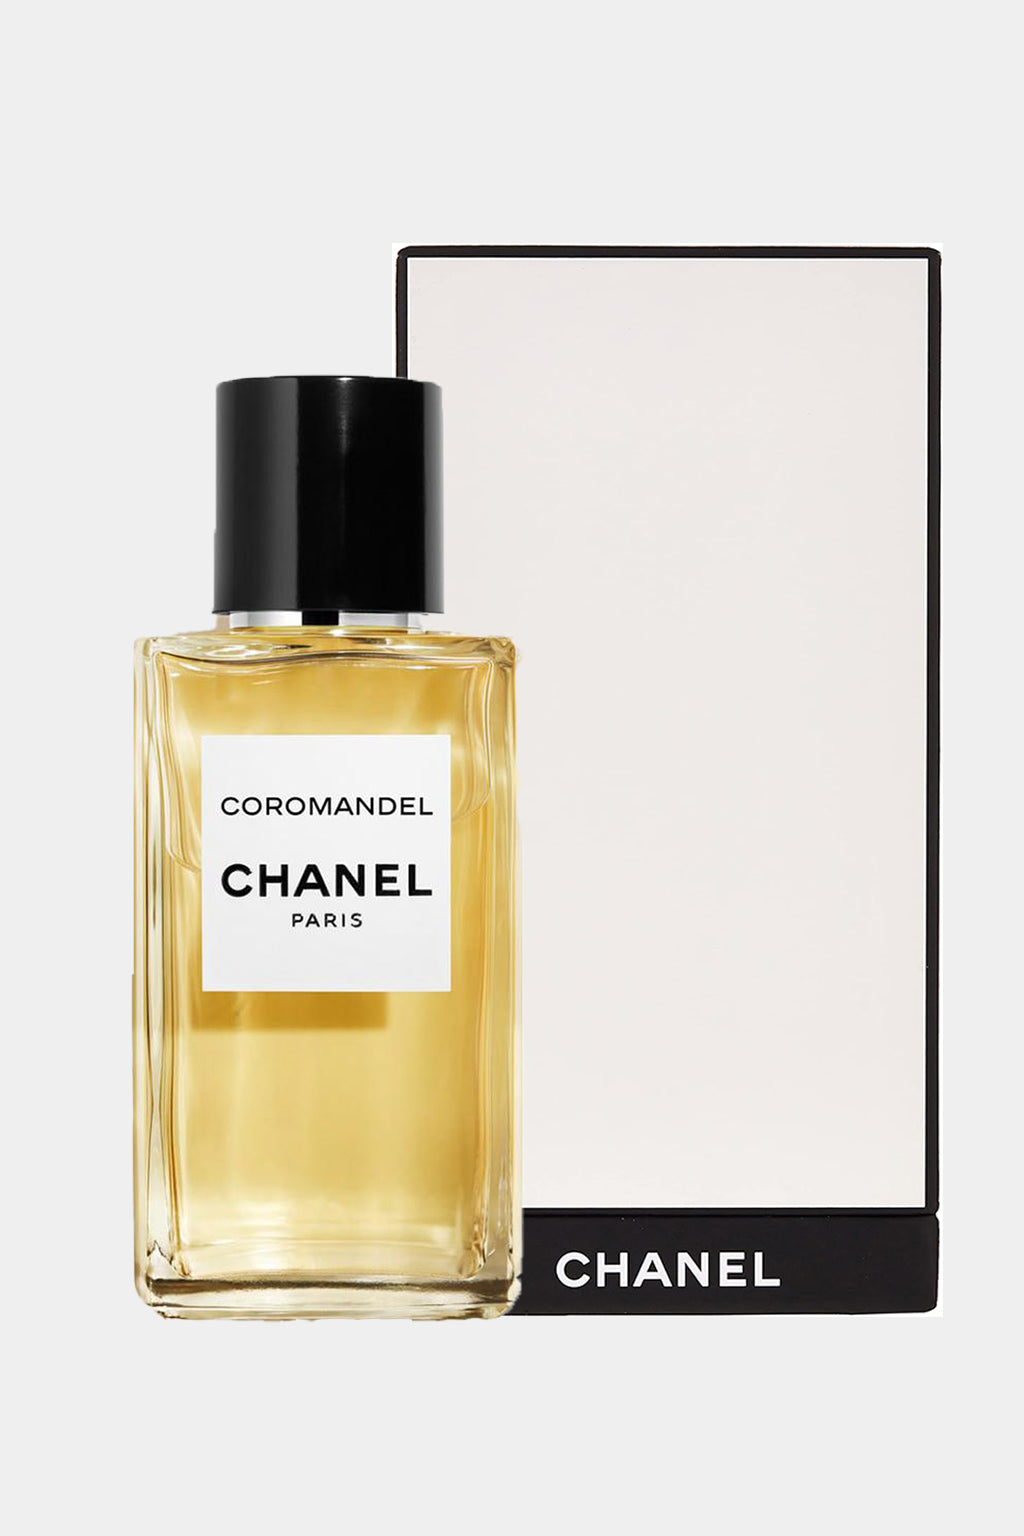 Chanel - Coromandel Eau de Parfum